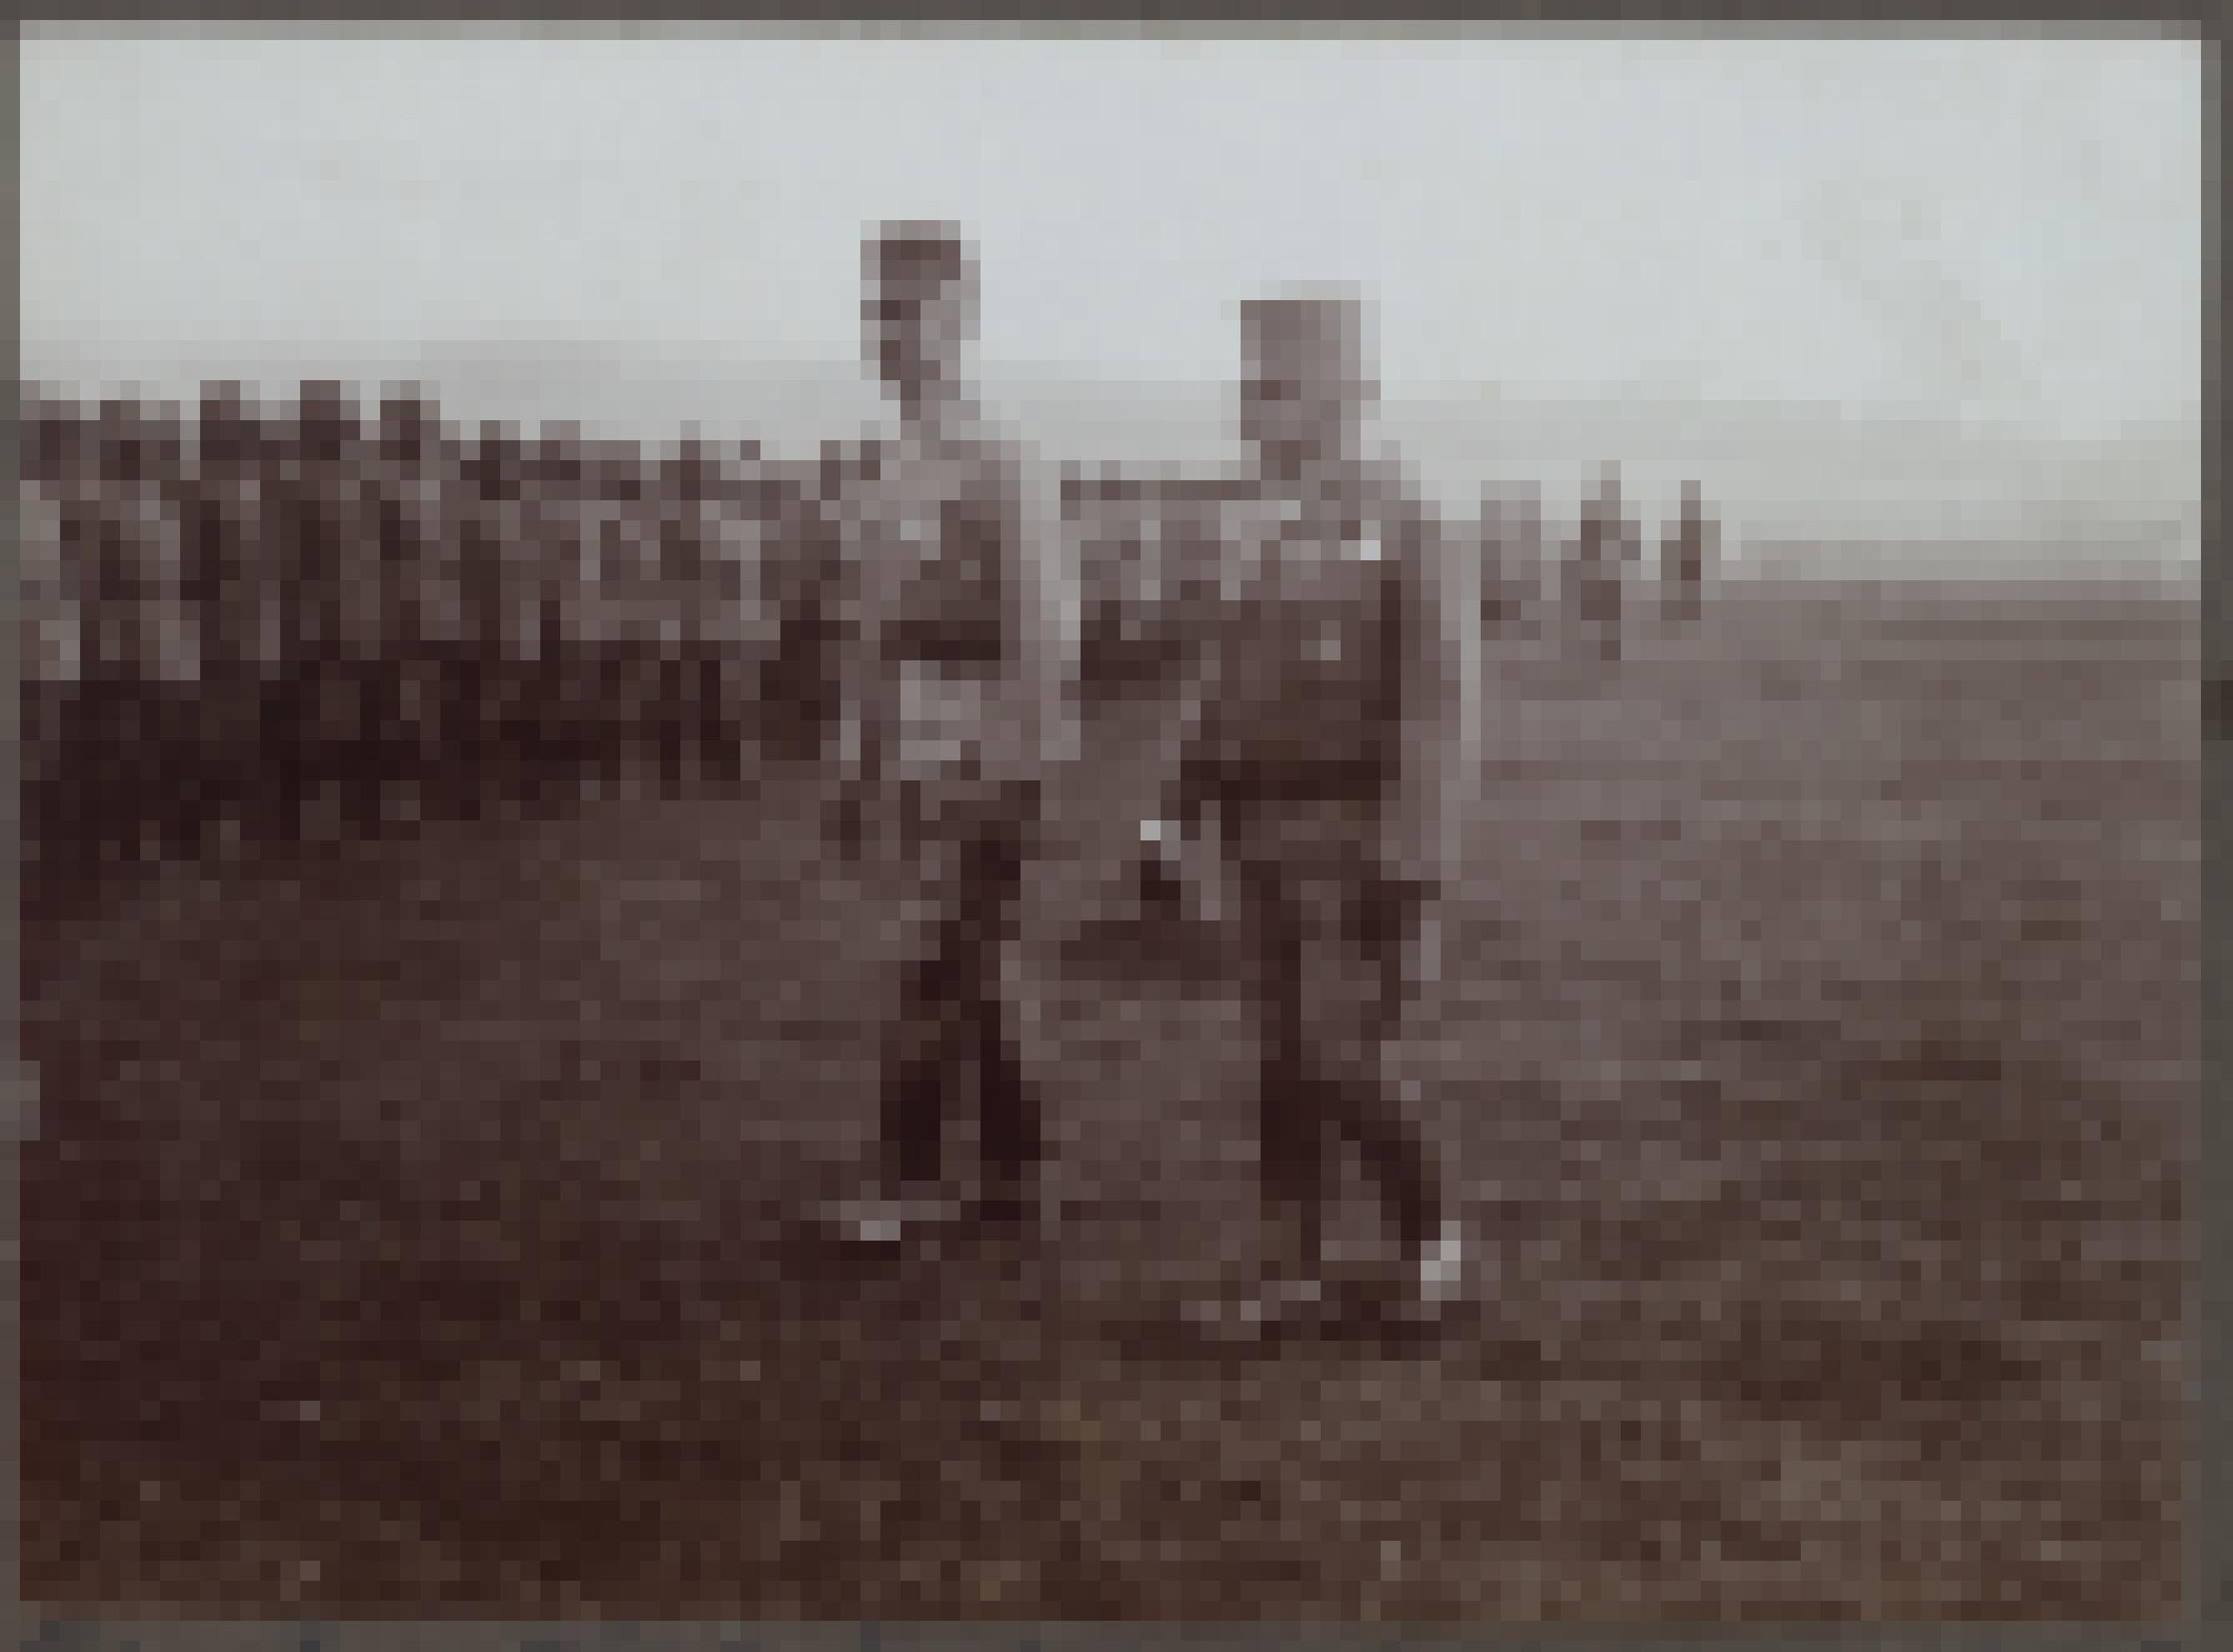 Bräunliche Schwarzweißfotografie, die auf einer Wiese zwei Männer in Uniform vor der angetretenen Truppe zeigt.